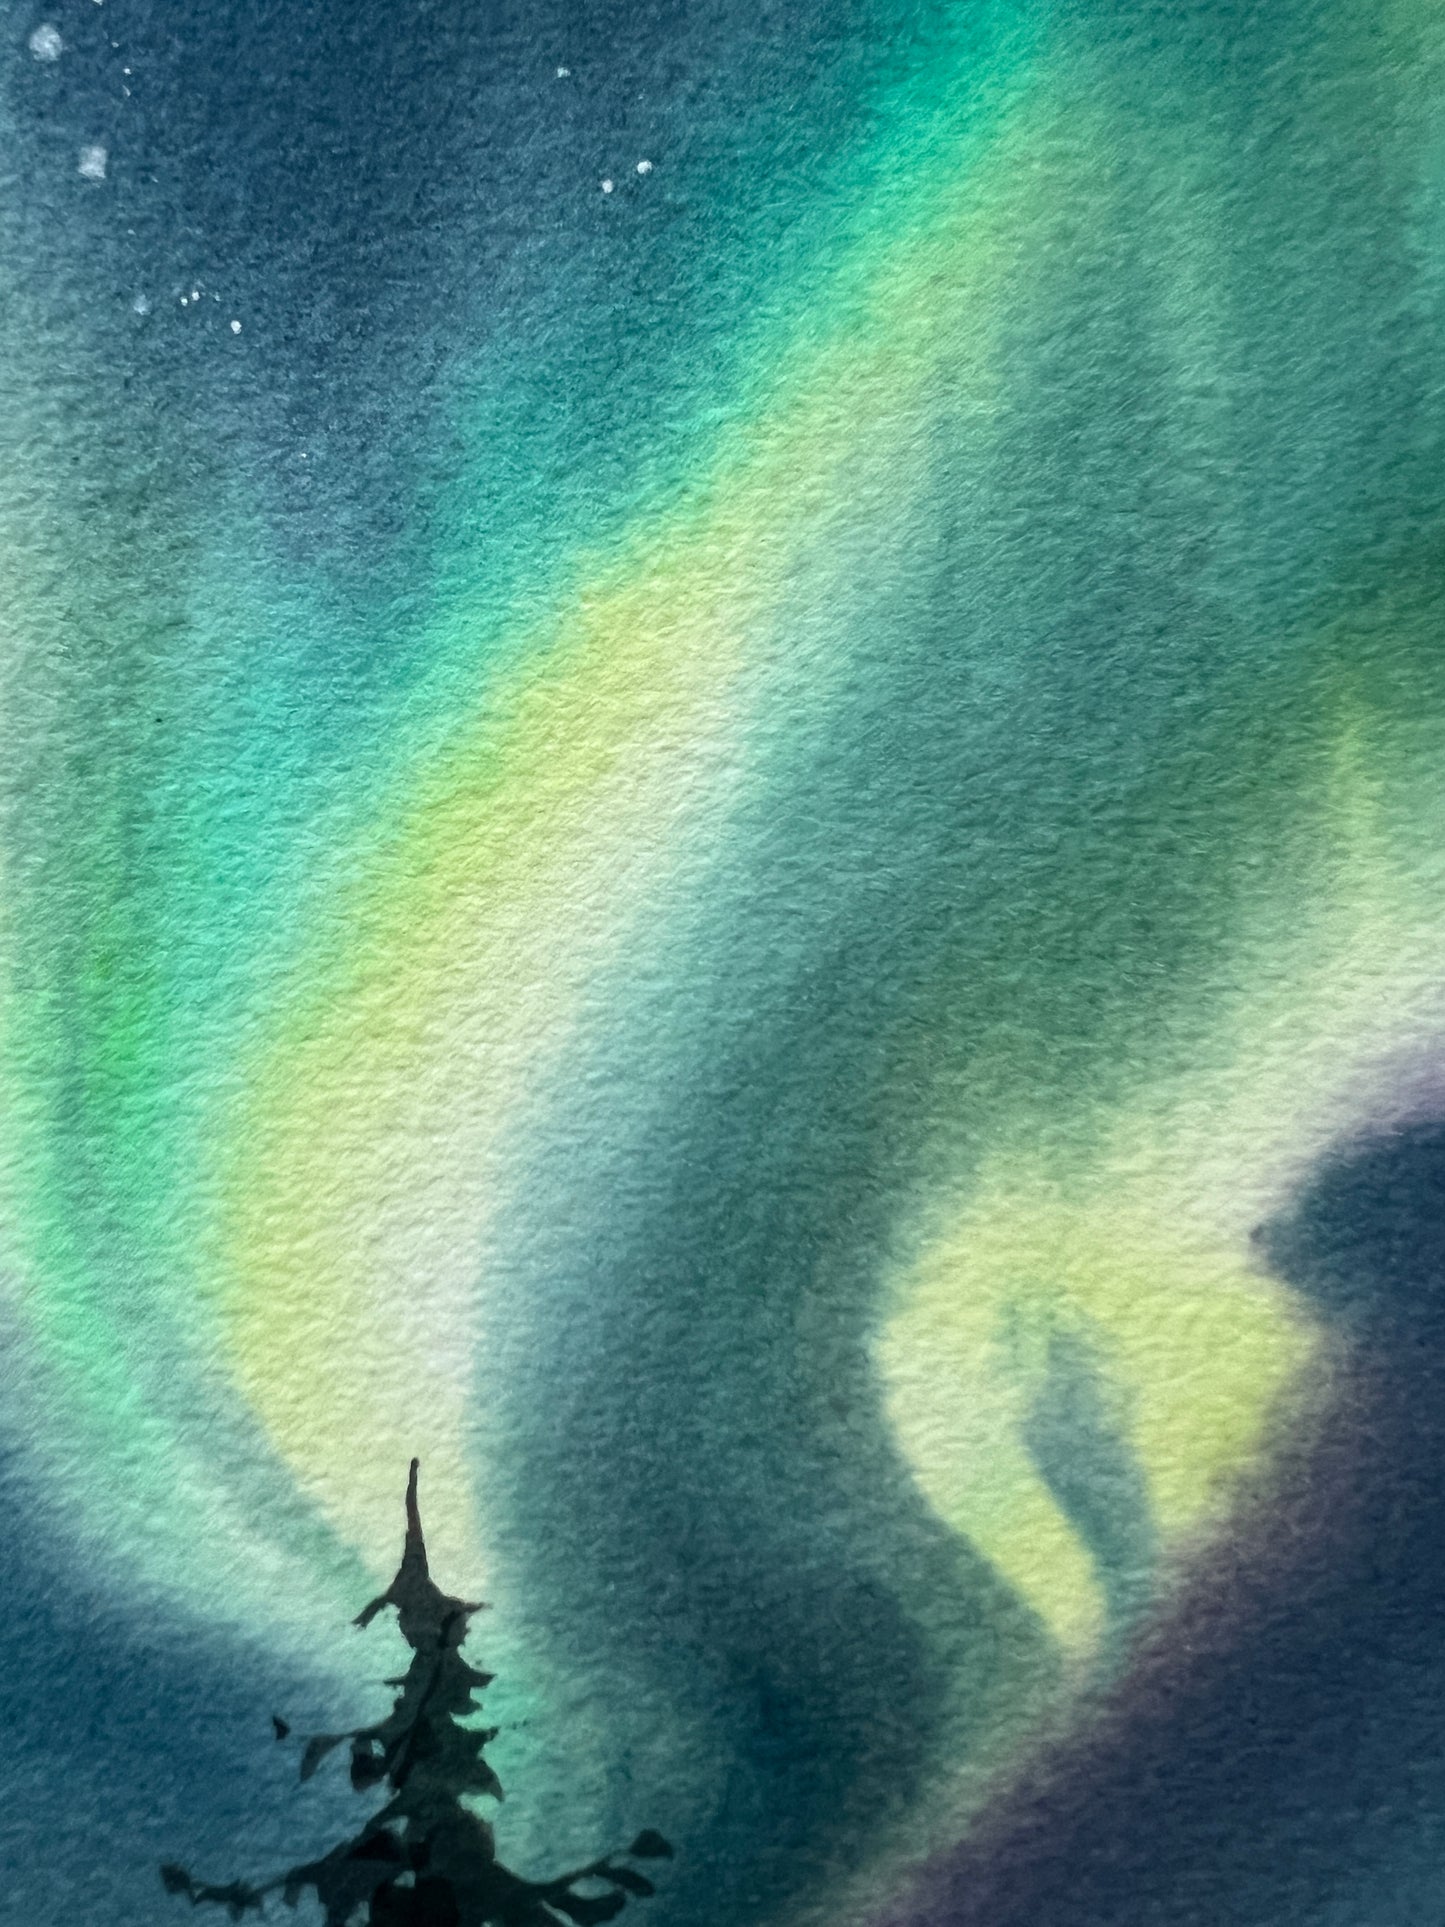 Small Painting Aurora Borealis, Watercolor Original - Northern lights #37